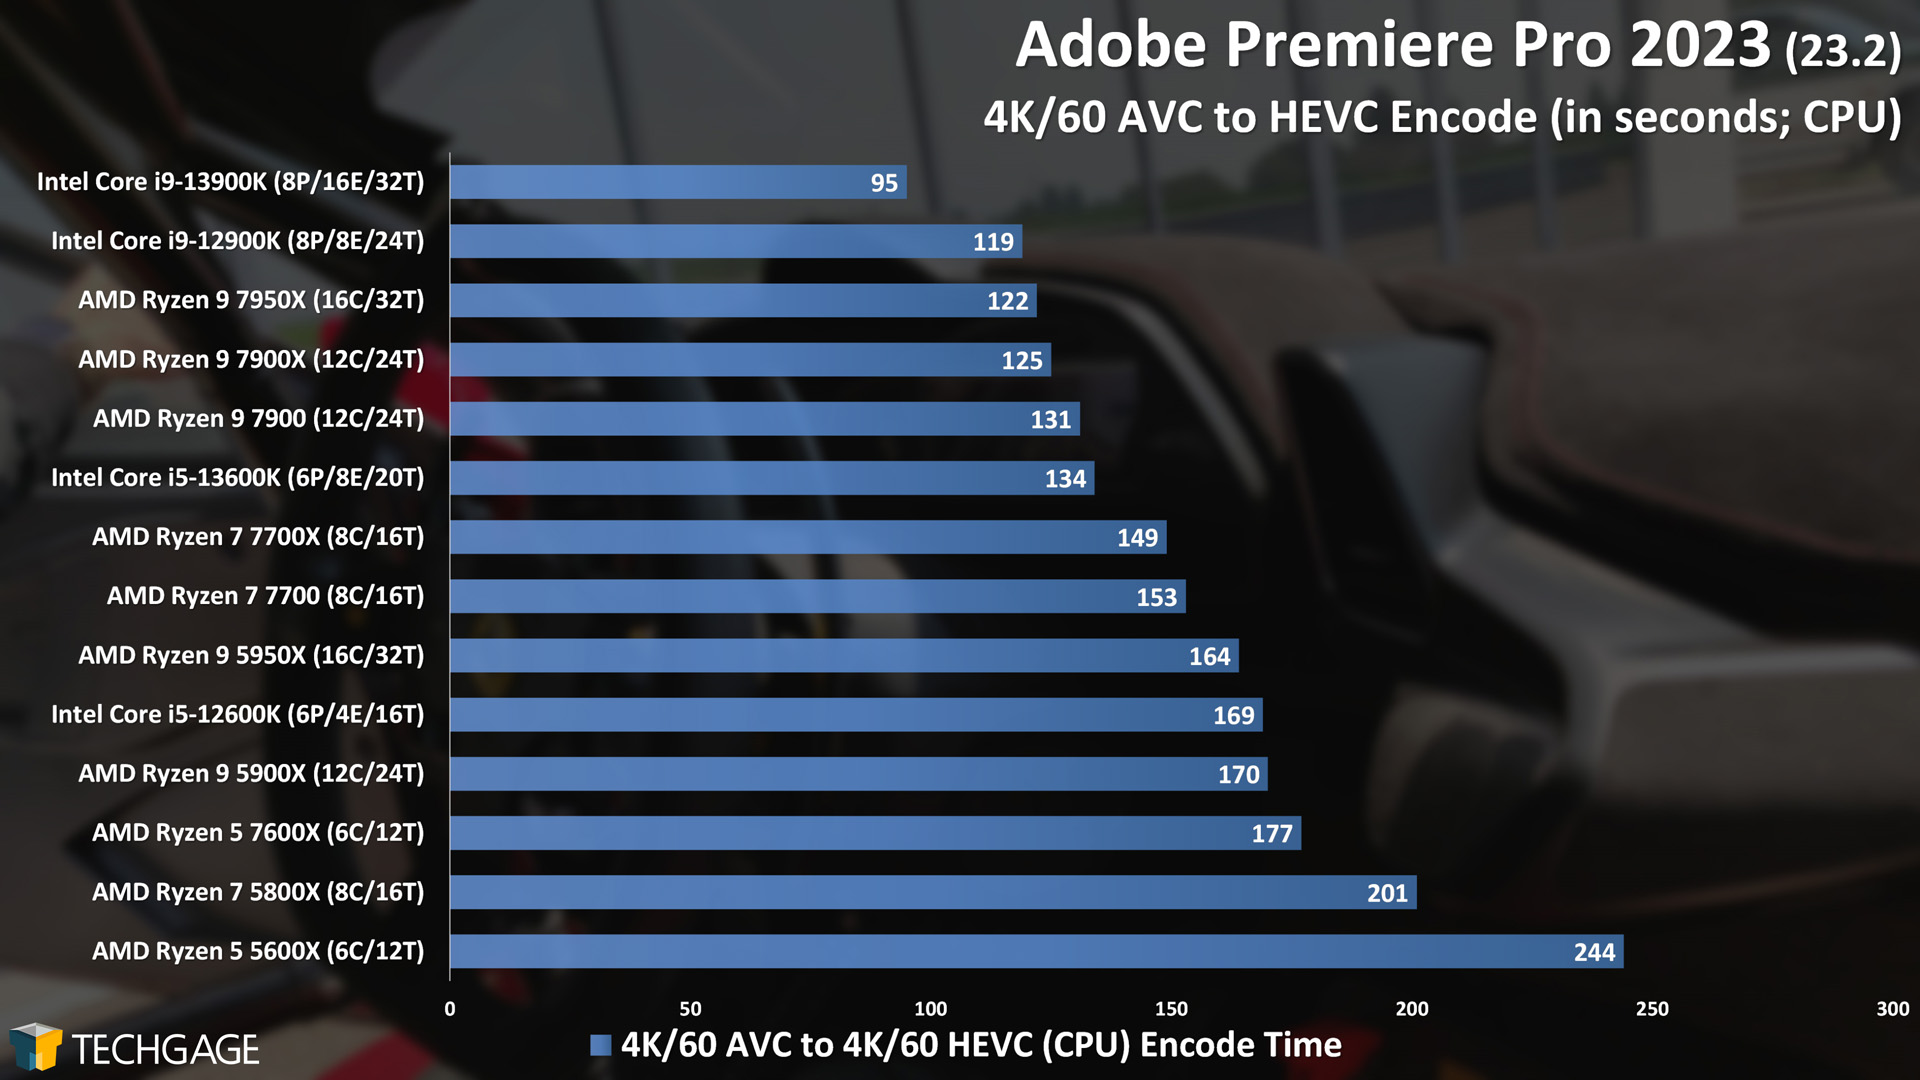 Adobe Premiere Pro - CPU Encoding Performance (4K60 AVC to HEVC)